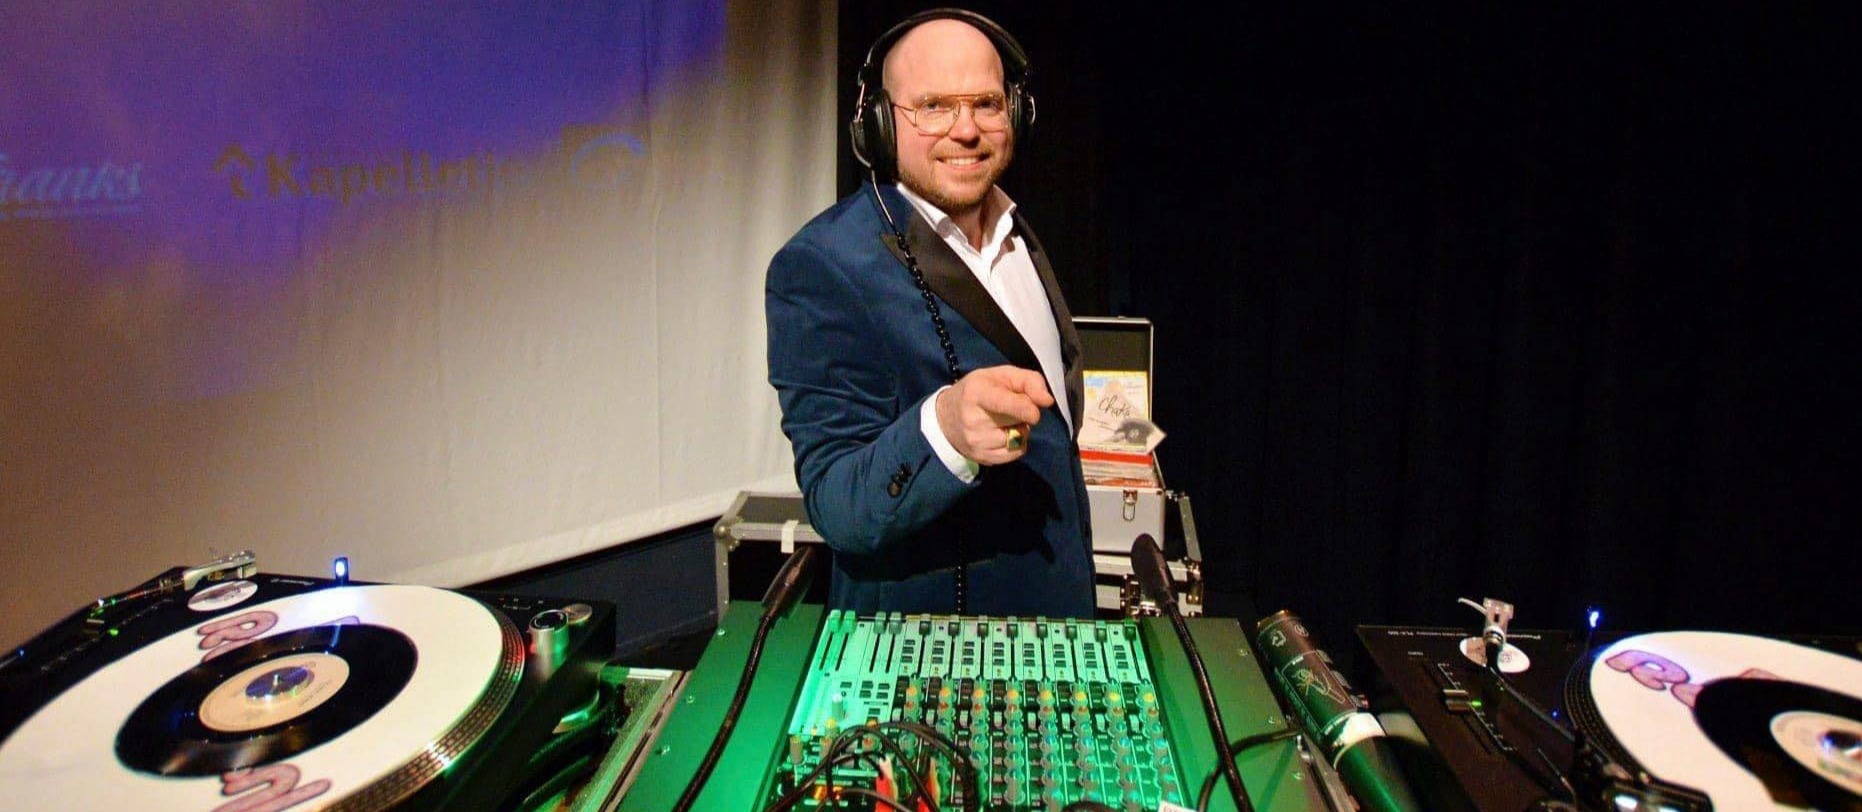 Dimitri Visch DJ Royaal,De meest goedlachse en veelzijdigste vinyl en event DJ van Nederland!